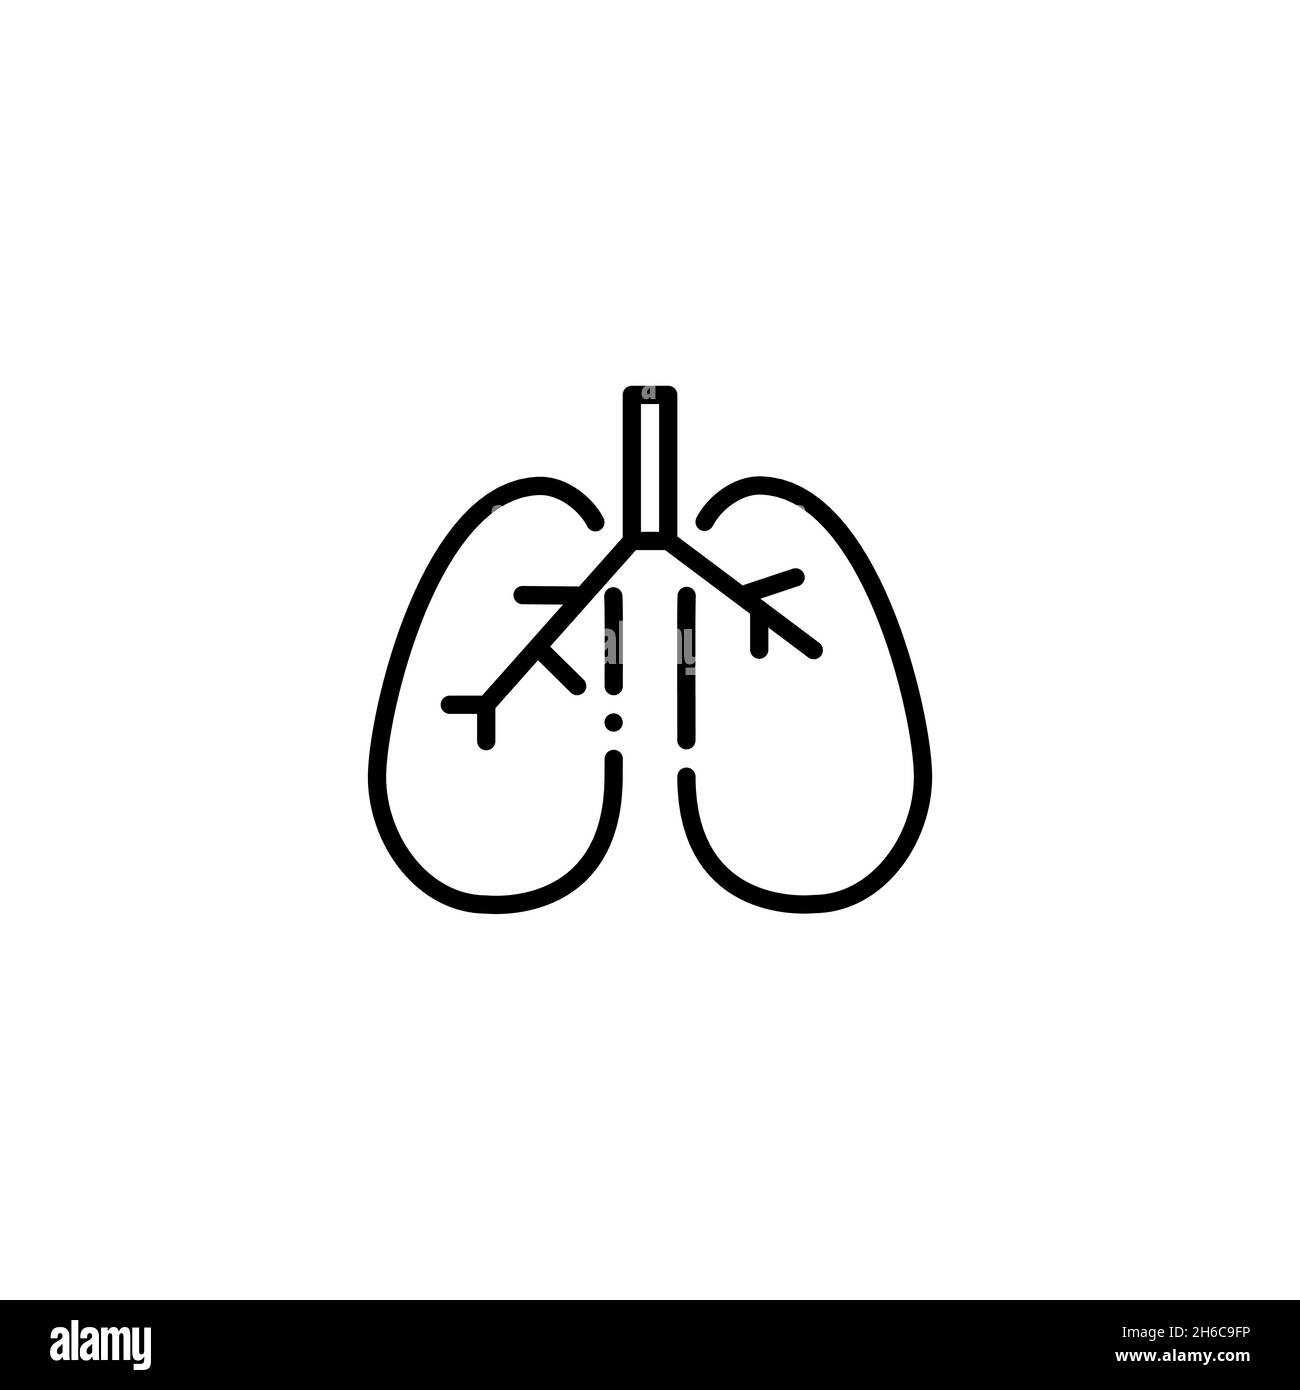 Menschliche Lunge. Internes Atmungsorgan. Pixel Perfect, bearbeitbares Kontursymbol Stock Vektor